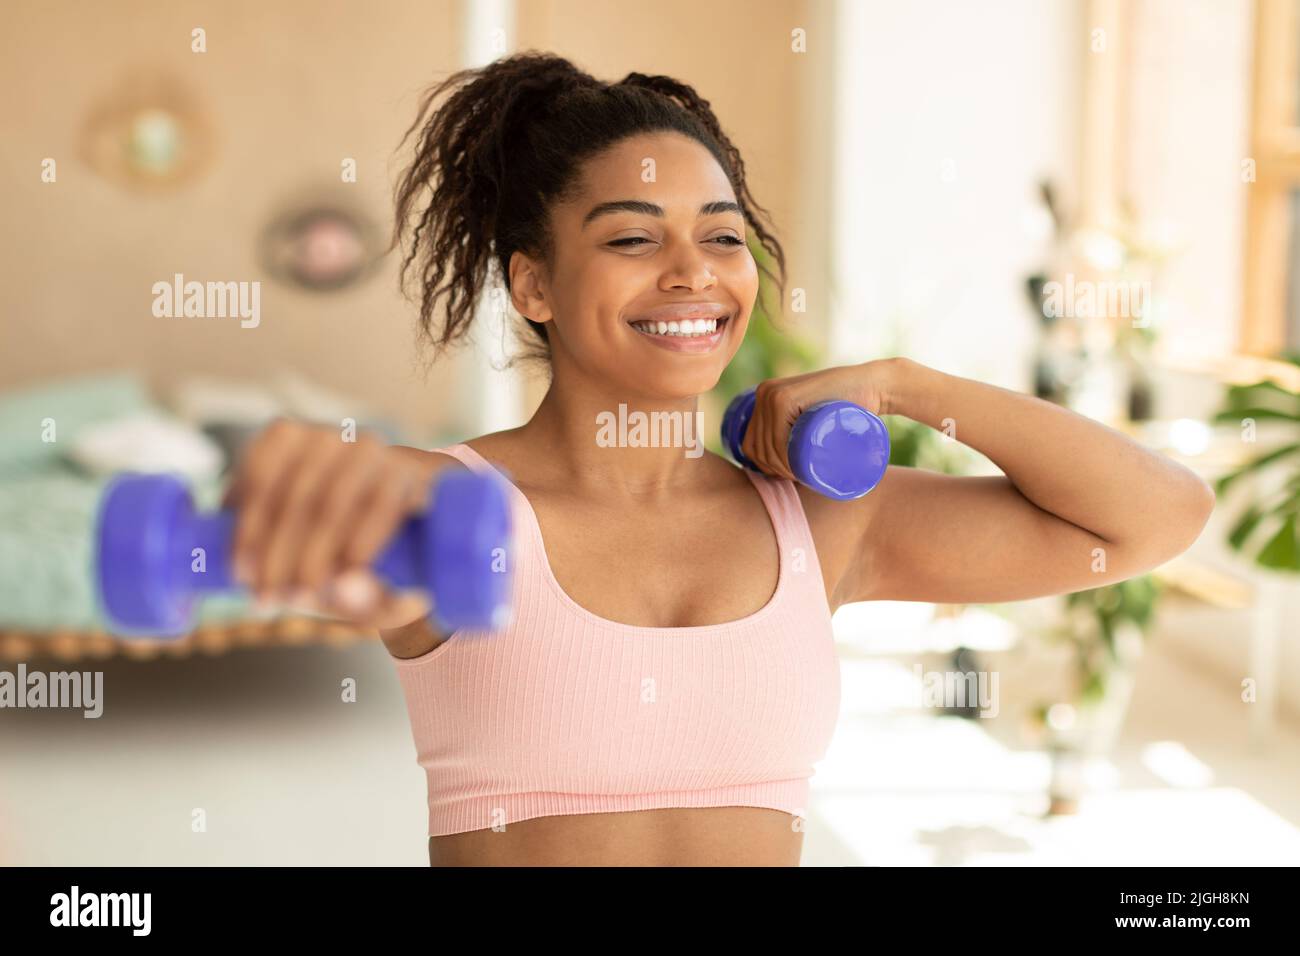 Entraînement avec poids. Bonne femme afro-américaine faisant des exercices avec des haltères, renforçant son corps à la maison Banque D'Images